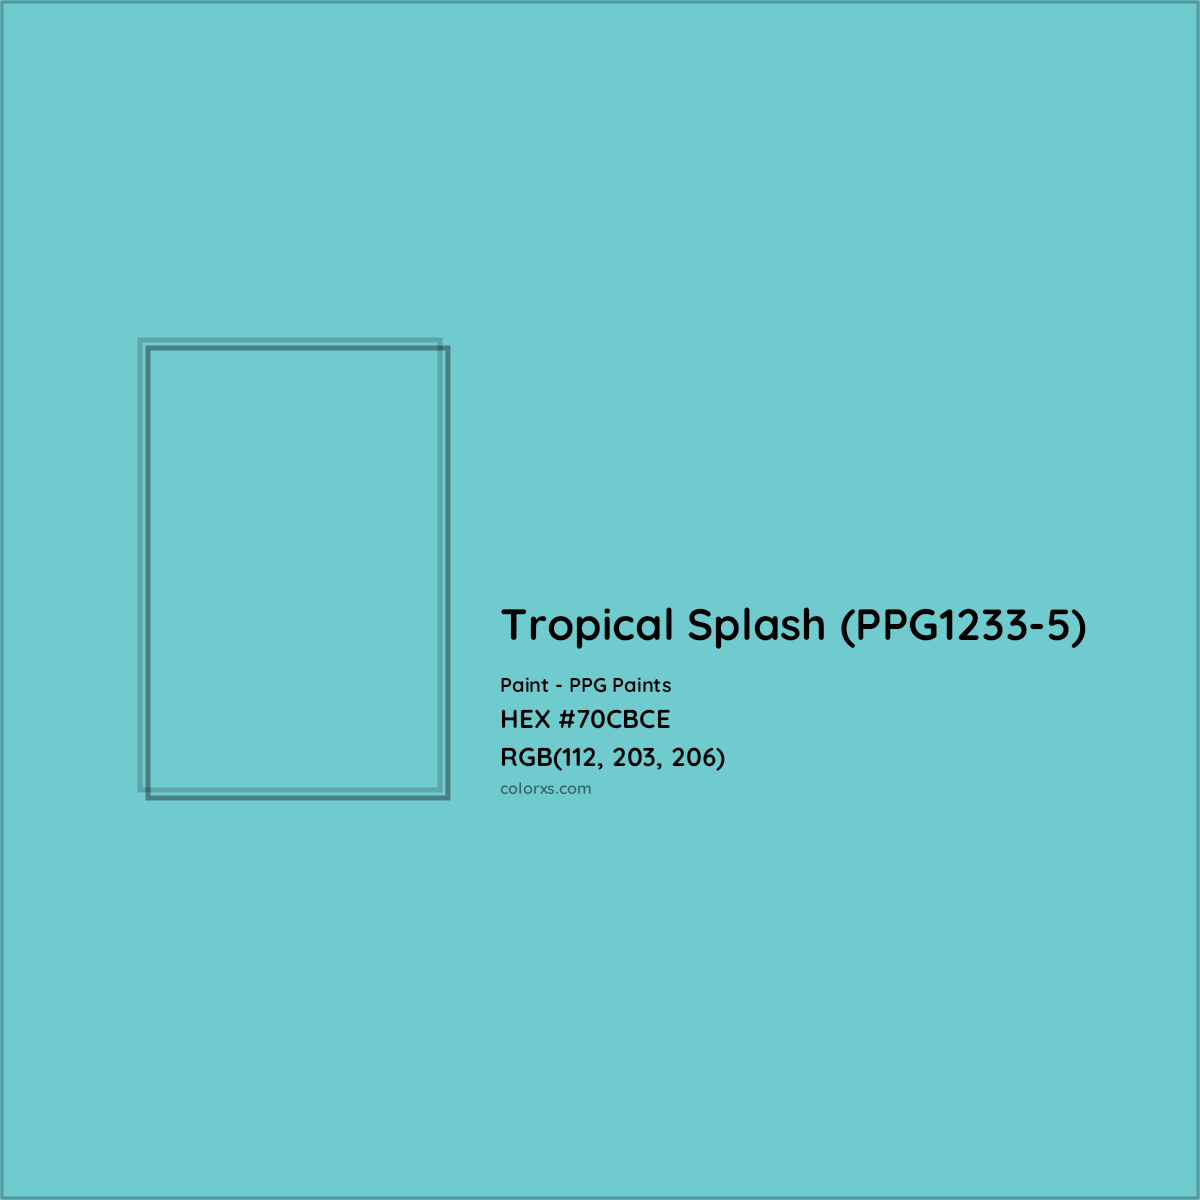 HEX #70CBCE Tropical Splash (PPG1233-5) Paint PPG Paints - Color Code